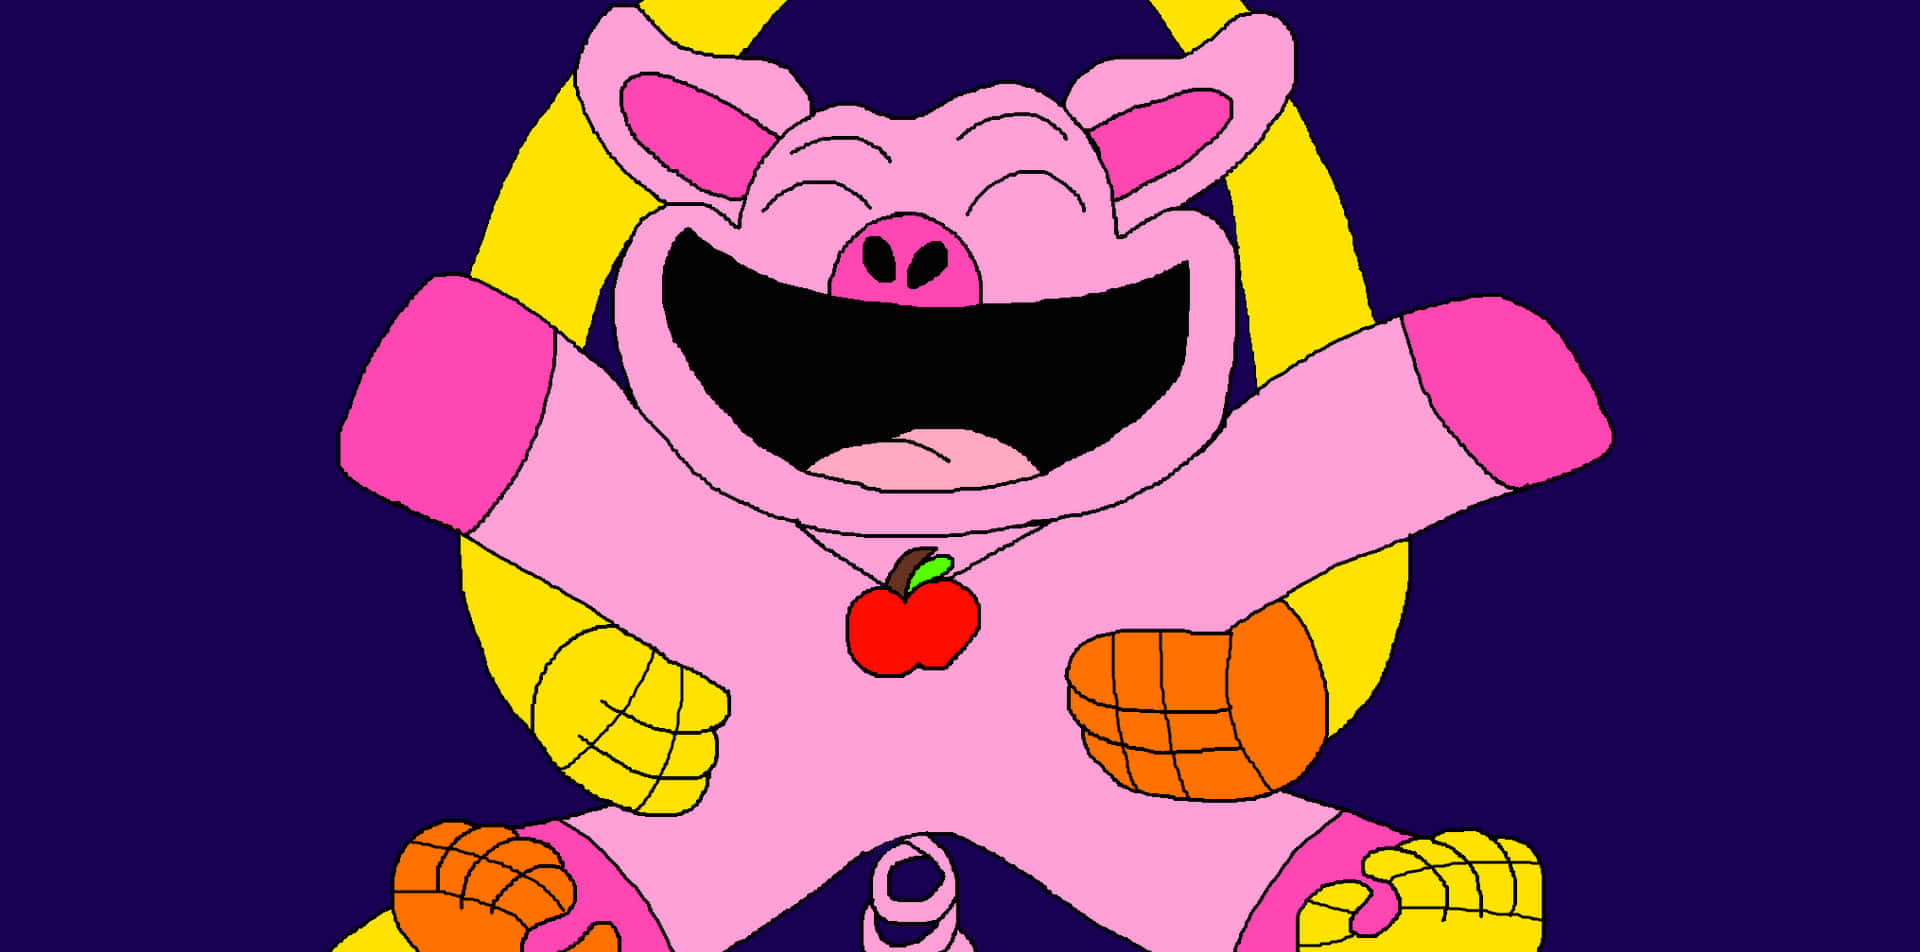 Happy Pig Cartoon Character Wallpaper